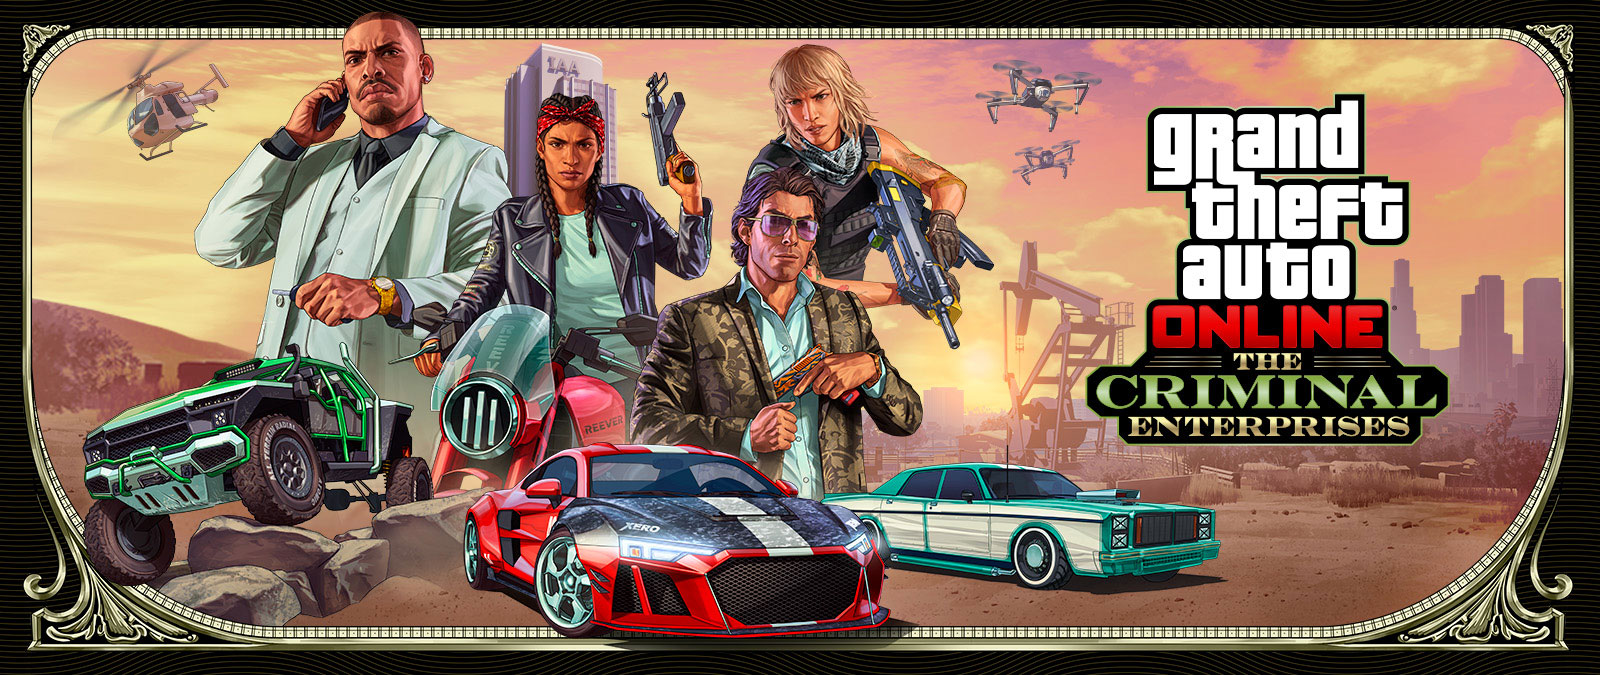 Grand Theft Auto Online: The Criminal Enterprises, trzy stylowe pojazdy ścigają się na pierwszym planie, gdy cztery postacie pozują na górze.